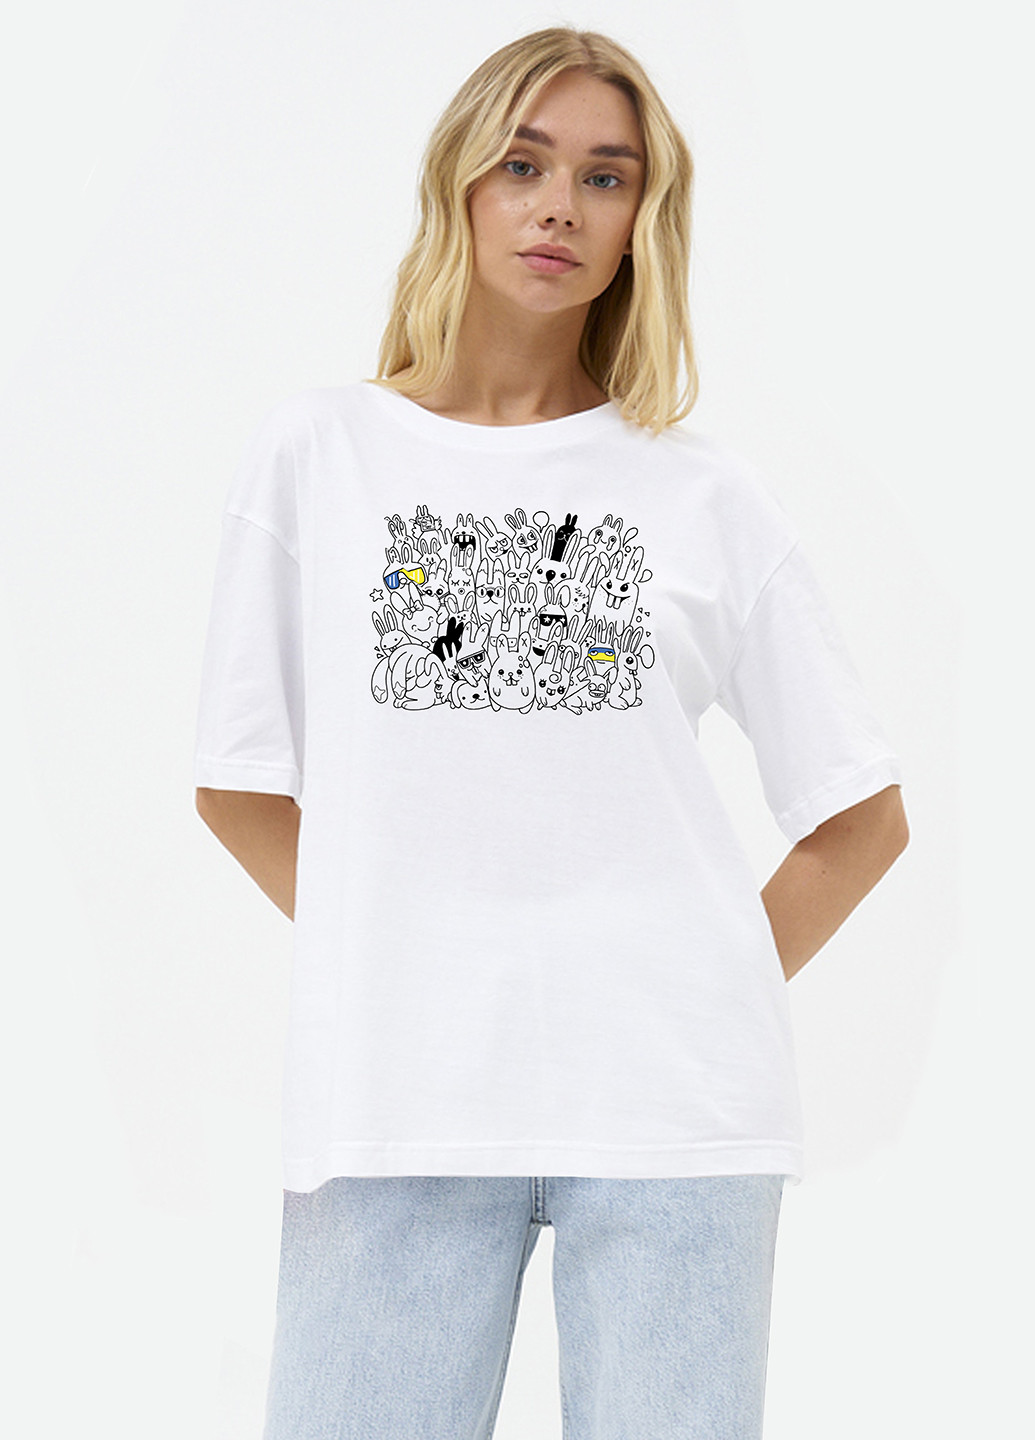 Белая летняя футболка женская оверсайз rabbits ua KASTA design